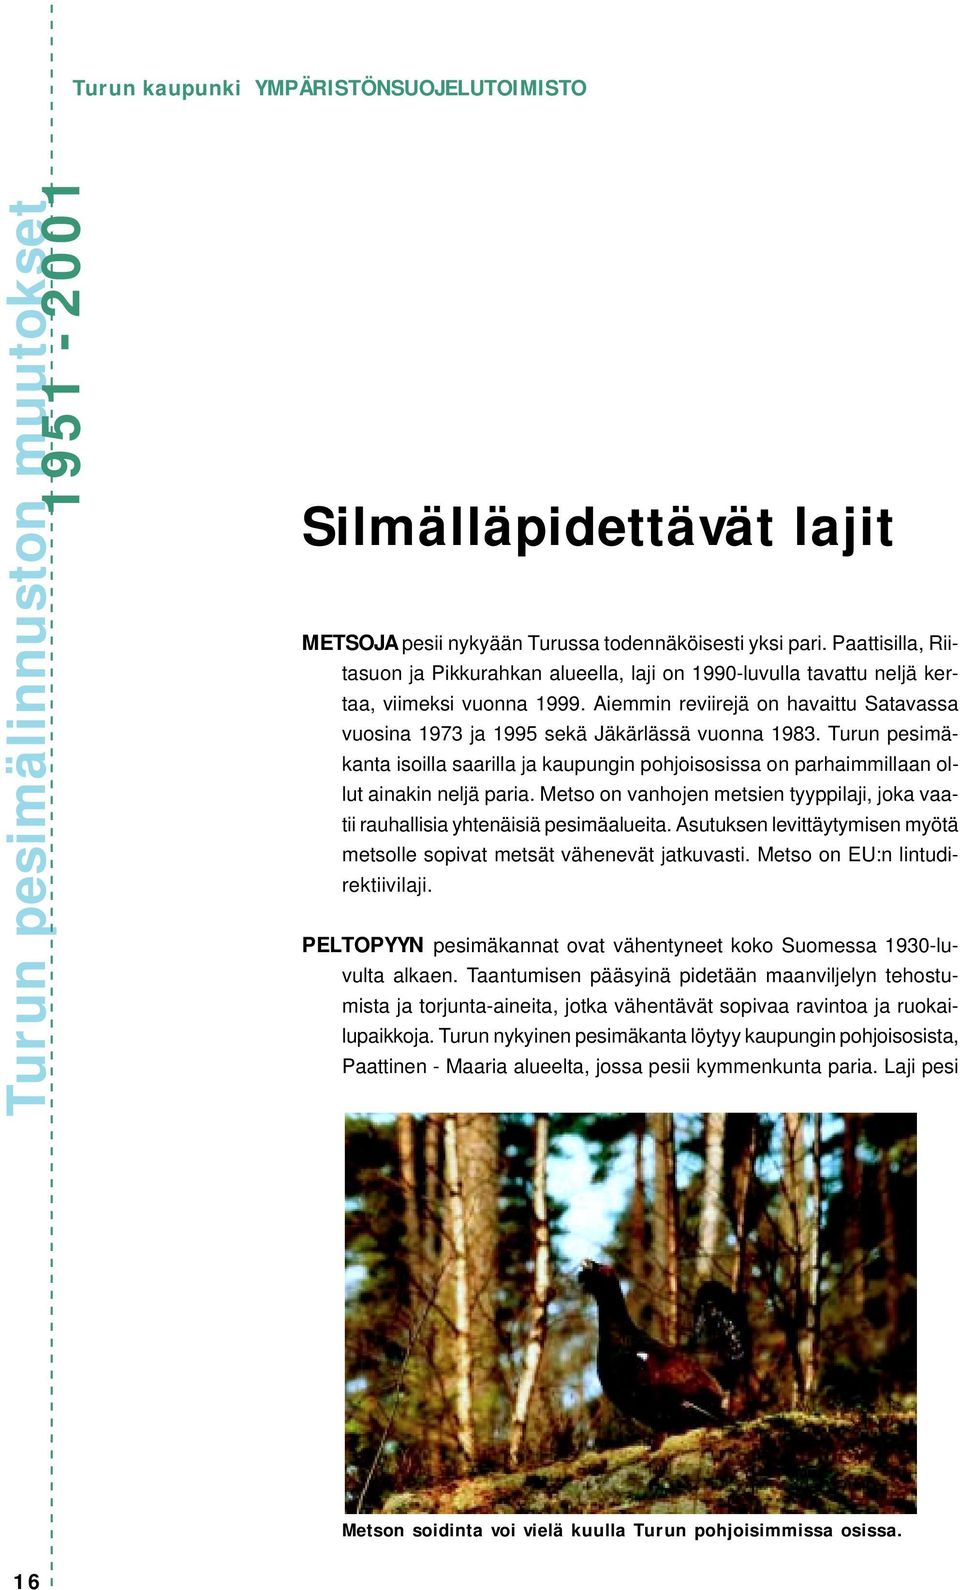 Aiemmin reviirejä on havaittu Satavassa vuosina 1973 ja 1995 sekä Jäkärlässä vuonna 1983. Turun pesimäkanta isoilla saarilla ja kaupungin pohjoisosissa on parhaimmillaan ollut ainakin neljä paria.